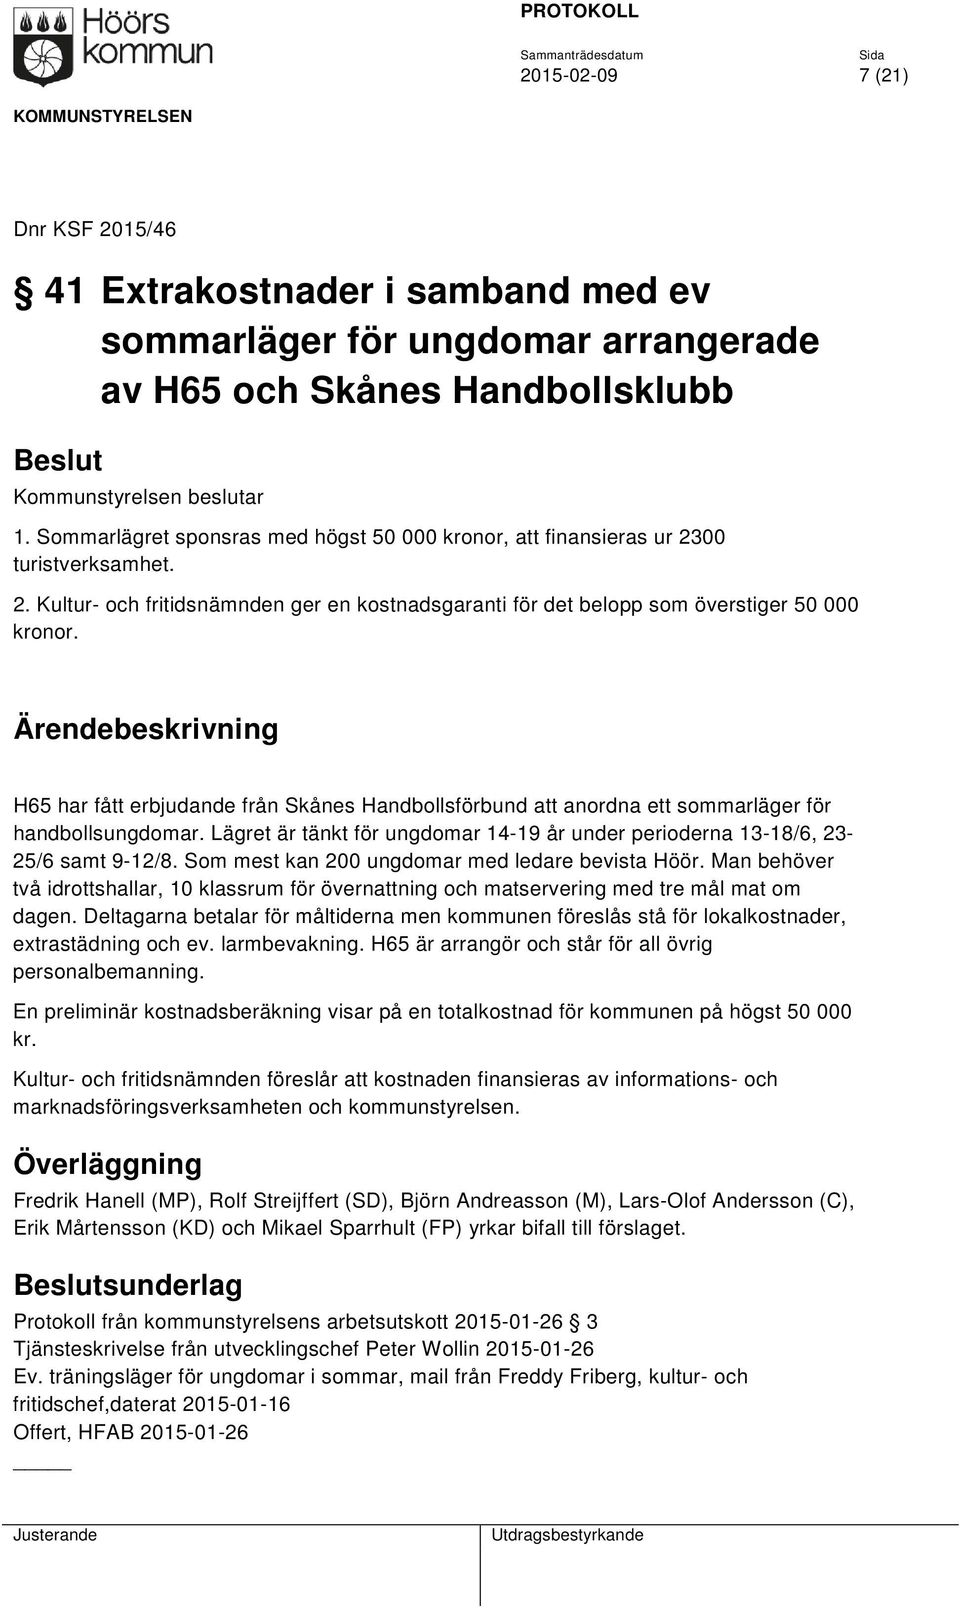 H65 har fått erbjudande från Skånes Handbollsförbund att anordna ett sommarläger för handbollsungdomar. Lägret är tänkt för ungdomar 14-19 år under perioderna 13-18/6, 23-25/6 samt 9-12/8.